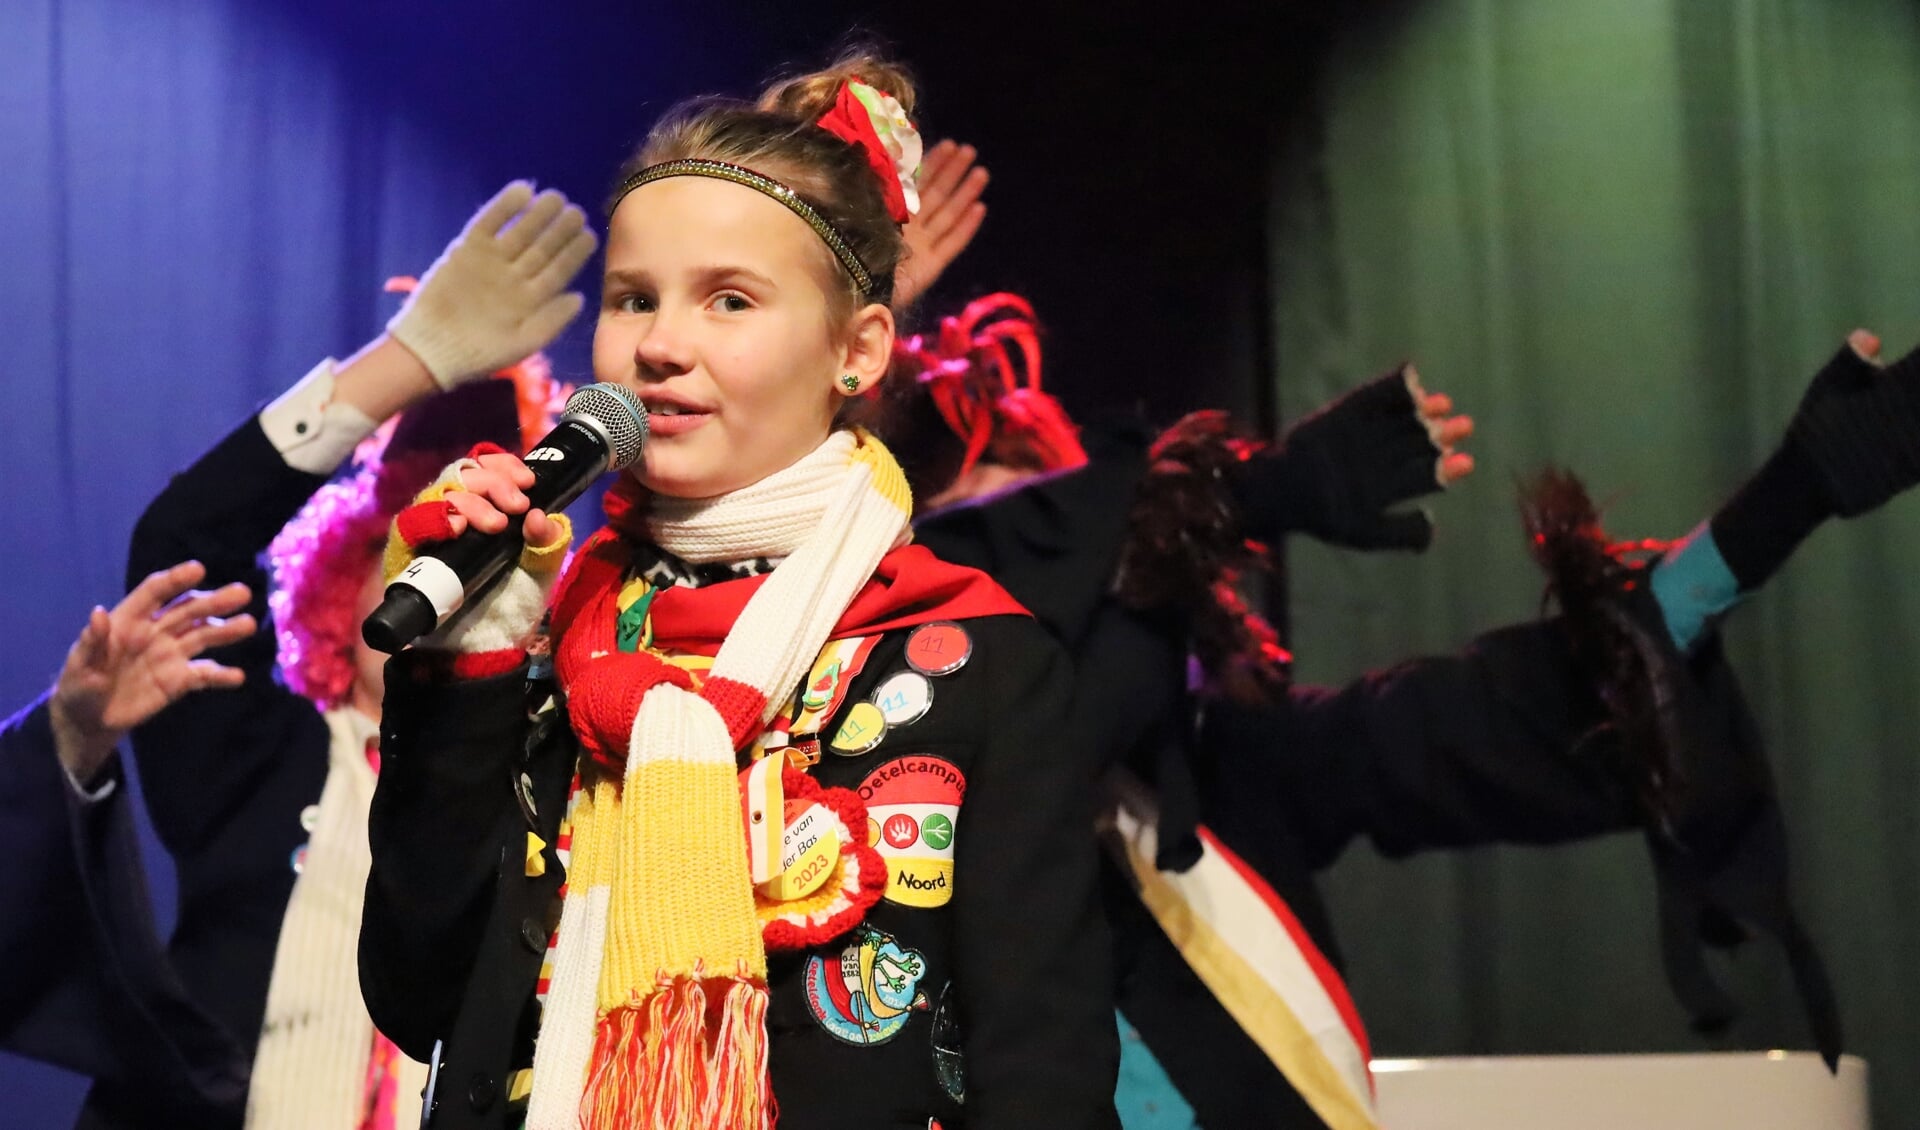 De 11-jarige Imme van der Bas geniet met volle teugen van alle activiteiten van de Oeteldonkse Jeugdprinsengroep. “Ik vind alles echt heel leuk”, aldus Imme, die geboren is op 11-11-11 om 03.33 uur. (Foto: Kees Vos)